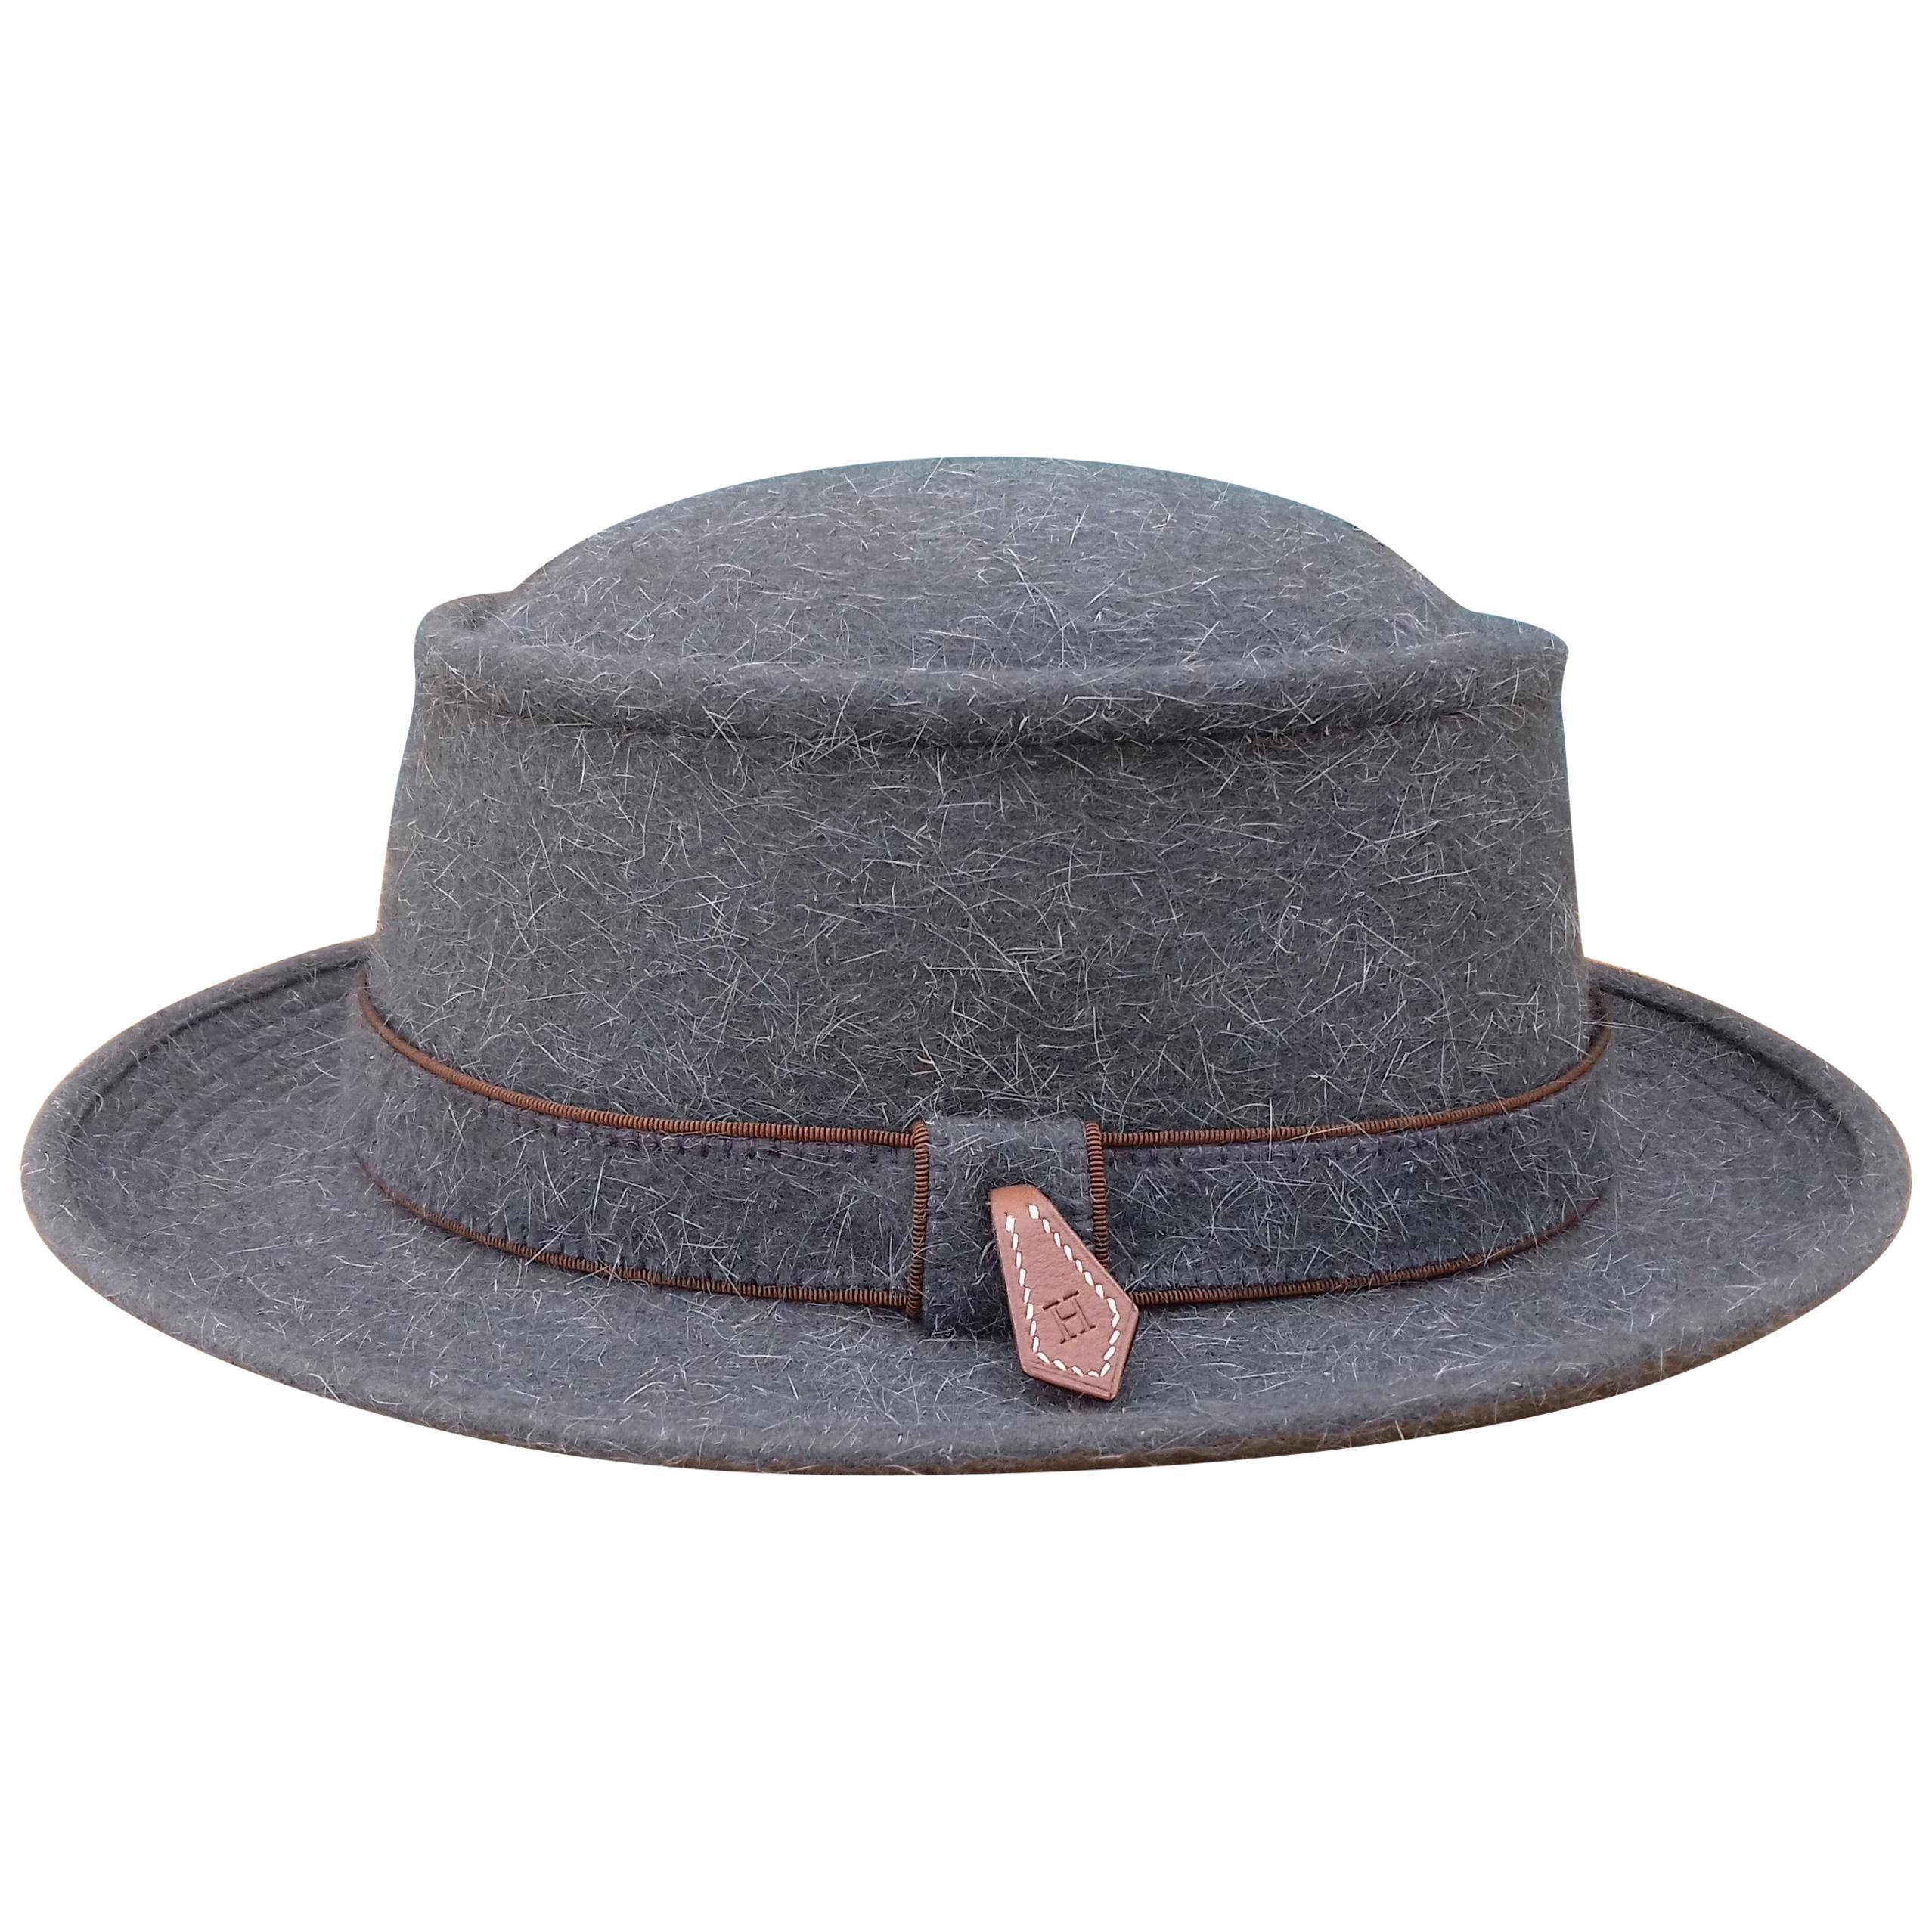 Motsch Paris for Hermès Felt Hat Grey Size 56